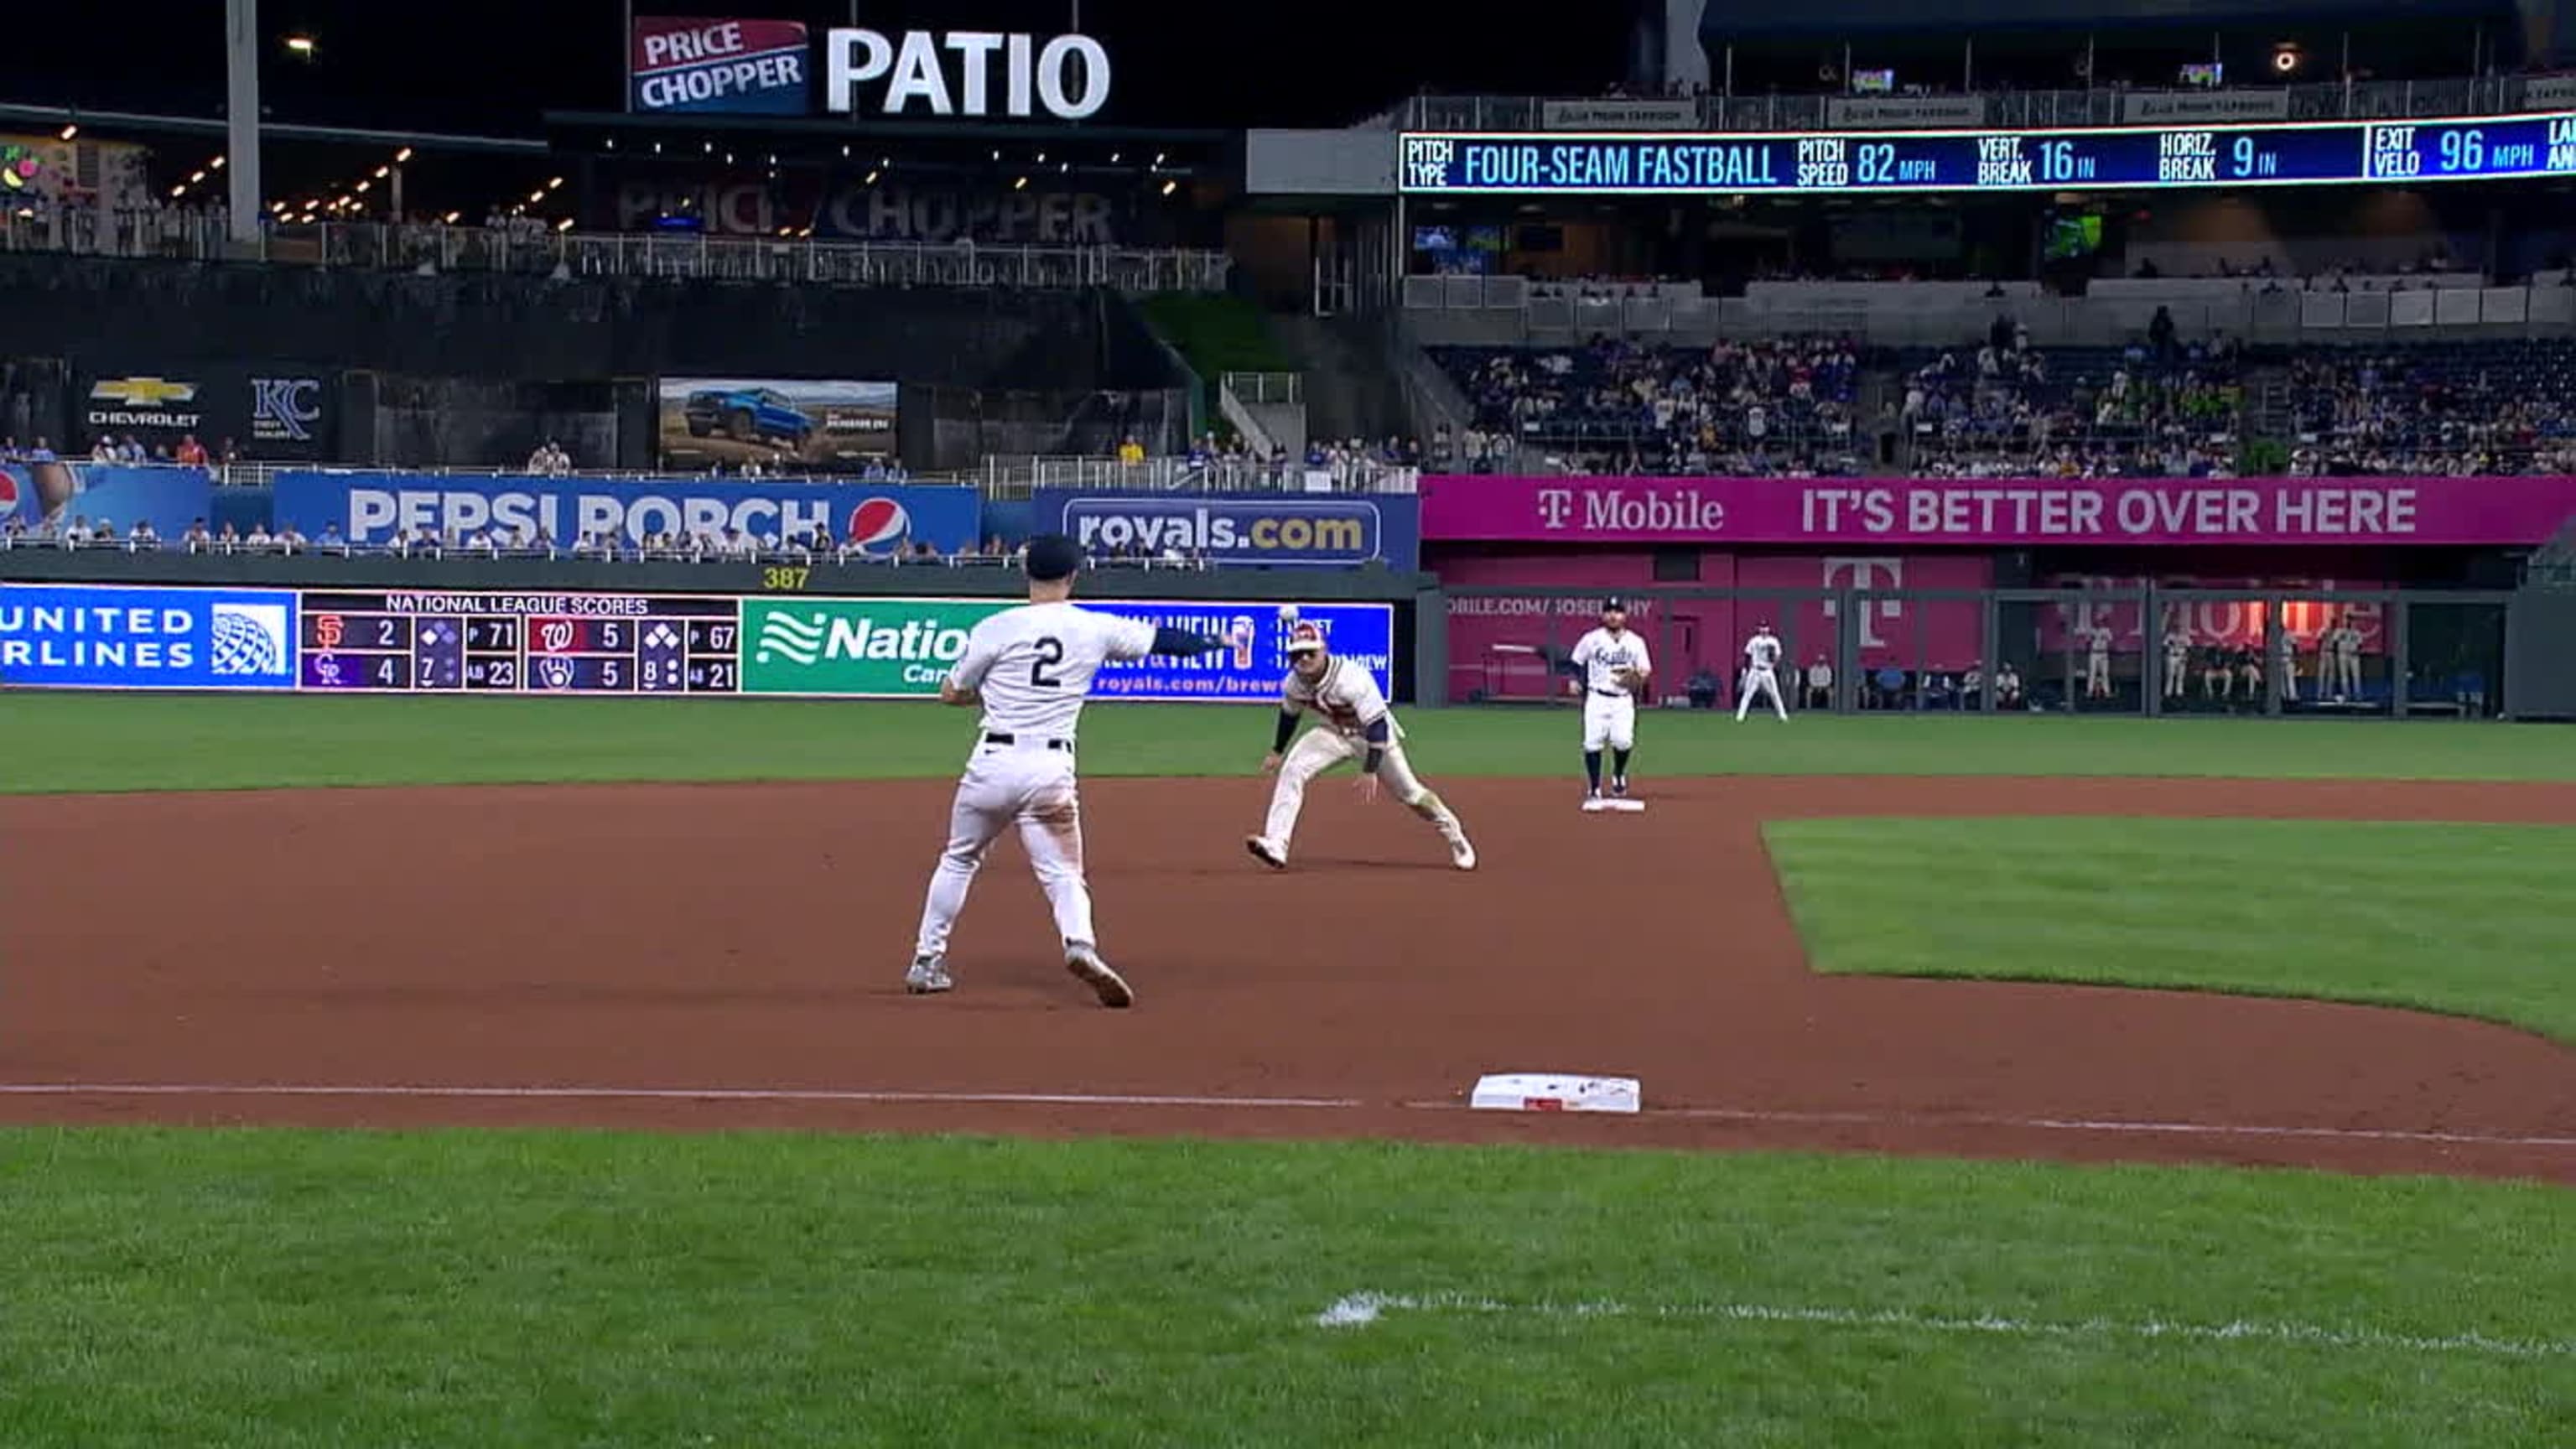 Jose Altuve's base-running gaffe hurt, but Astros' missed chances